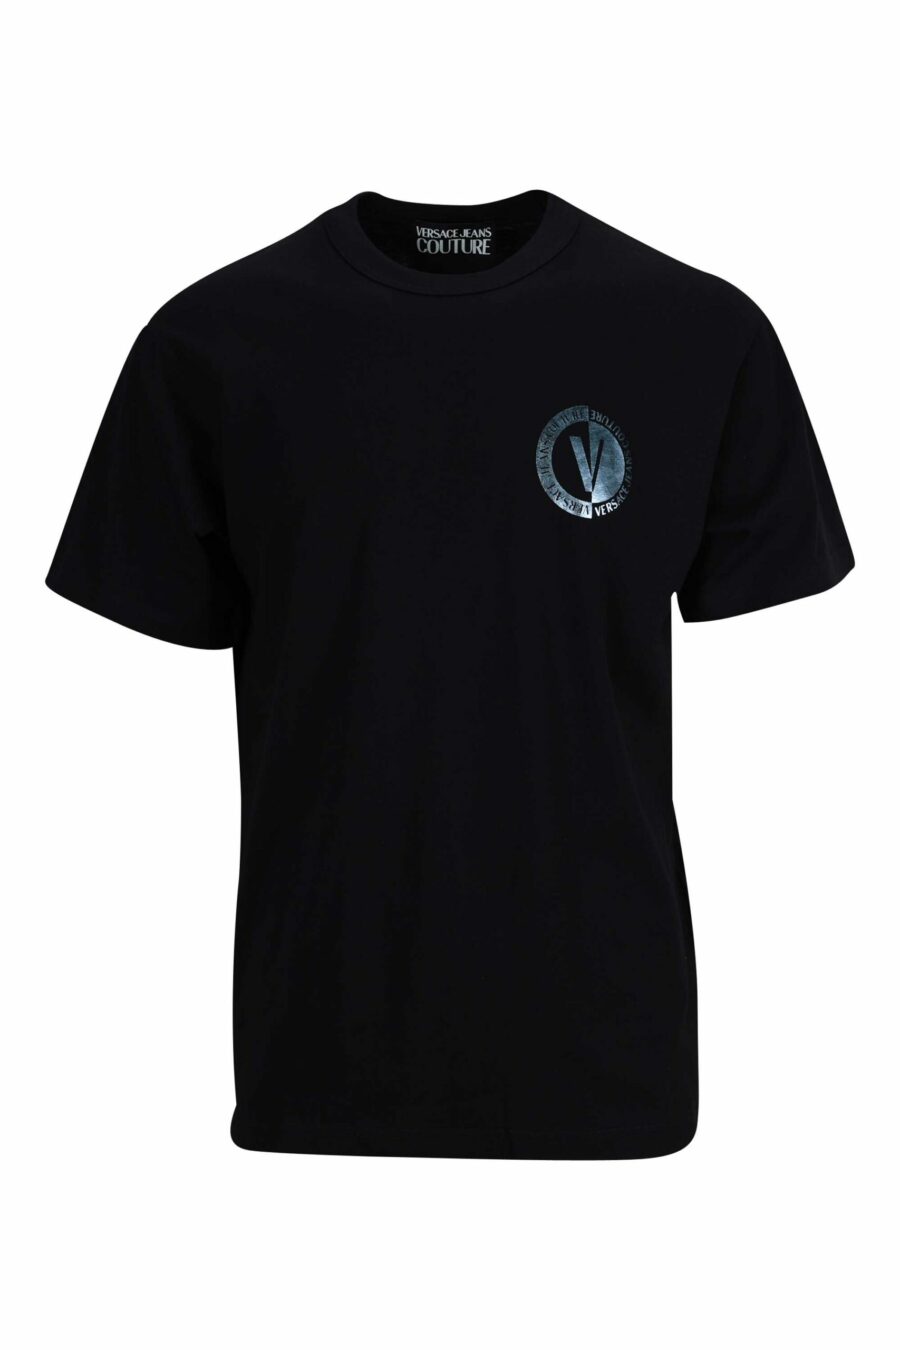 Camiseta negra con minilogo circular azul metálico - 8052019402216 scaled